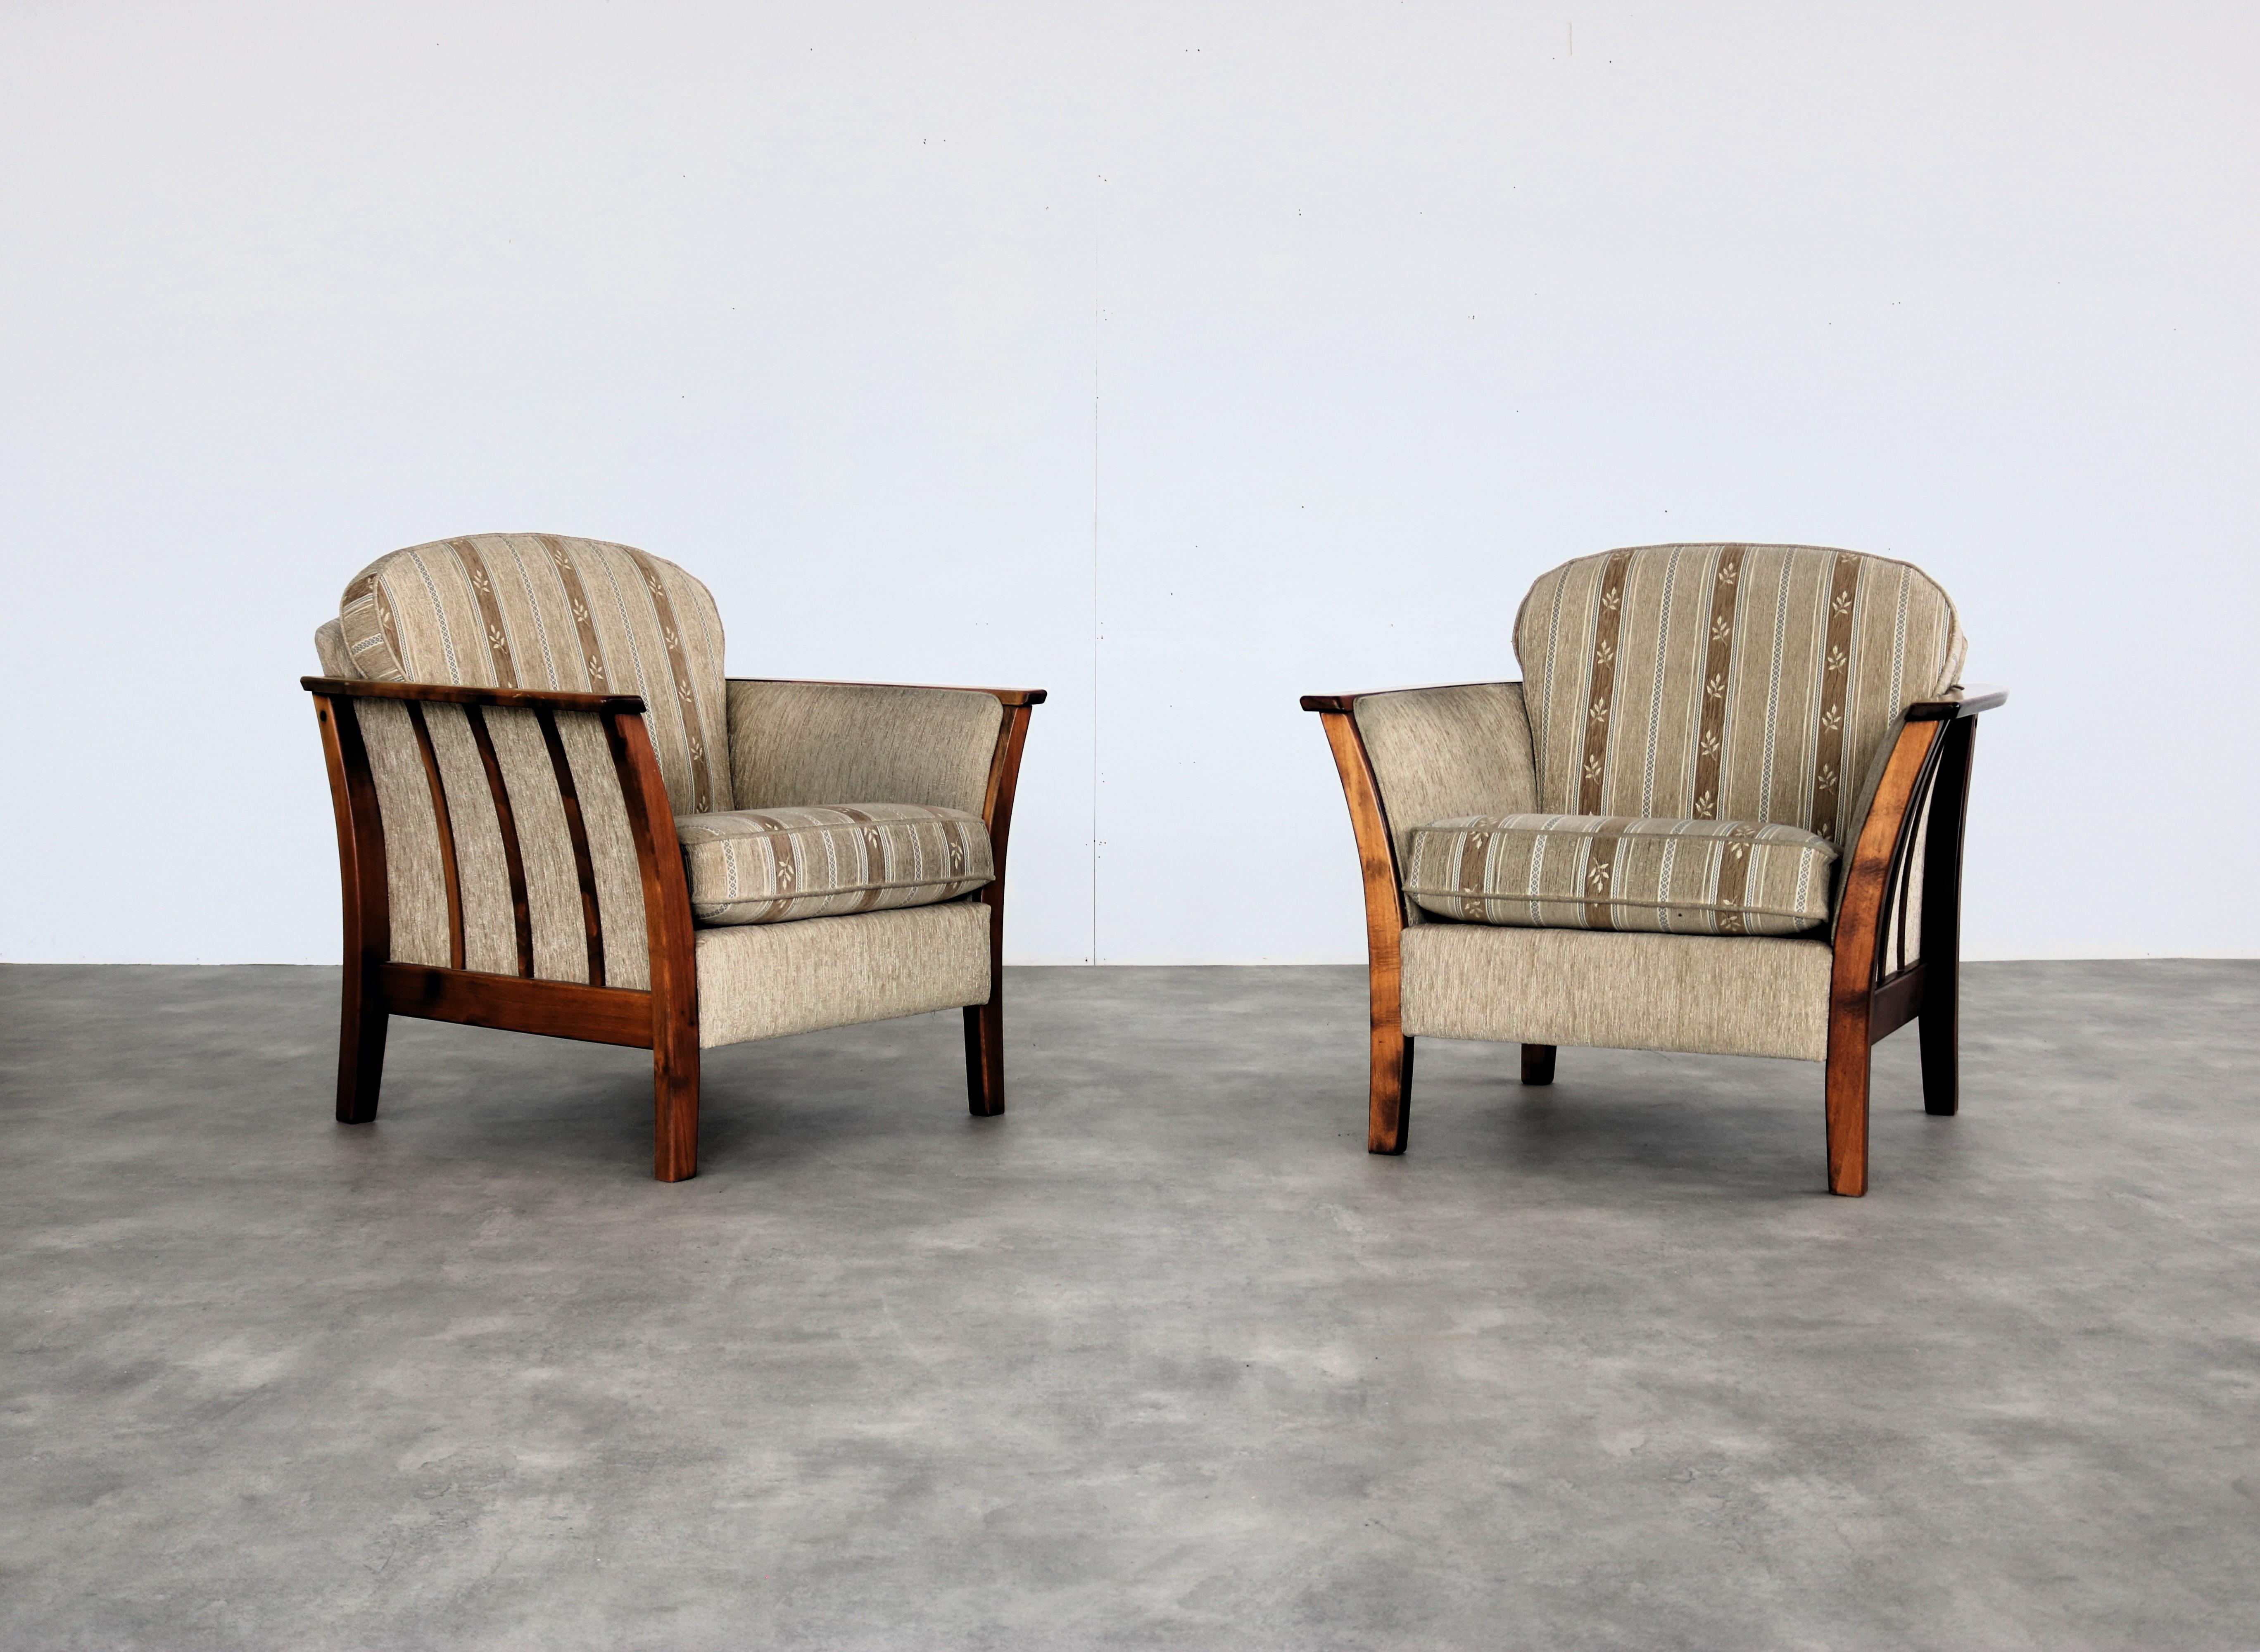 
Fauteuils vintage  fauteuils  60s  Suède

période  60's
Design/One  inconnu  Suède
condition  bon  signes d'utilisation ; rayures ; décoloration ;
taille  83 x 87 x 45 (hxwxd) hauteur du siège 46 cm ;

détails  teck ; substances ; 2 disponibles ;